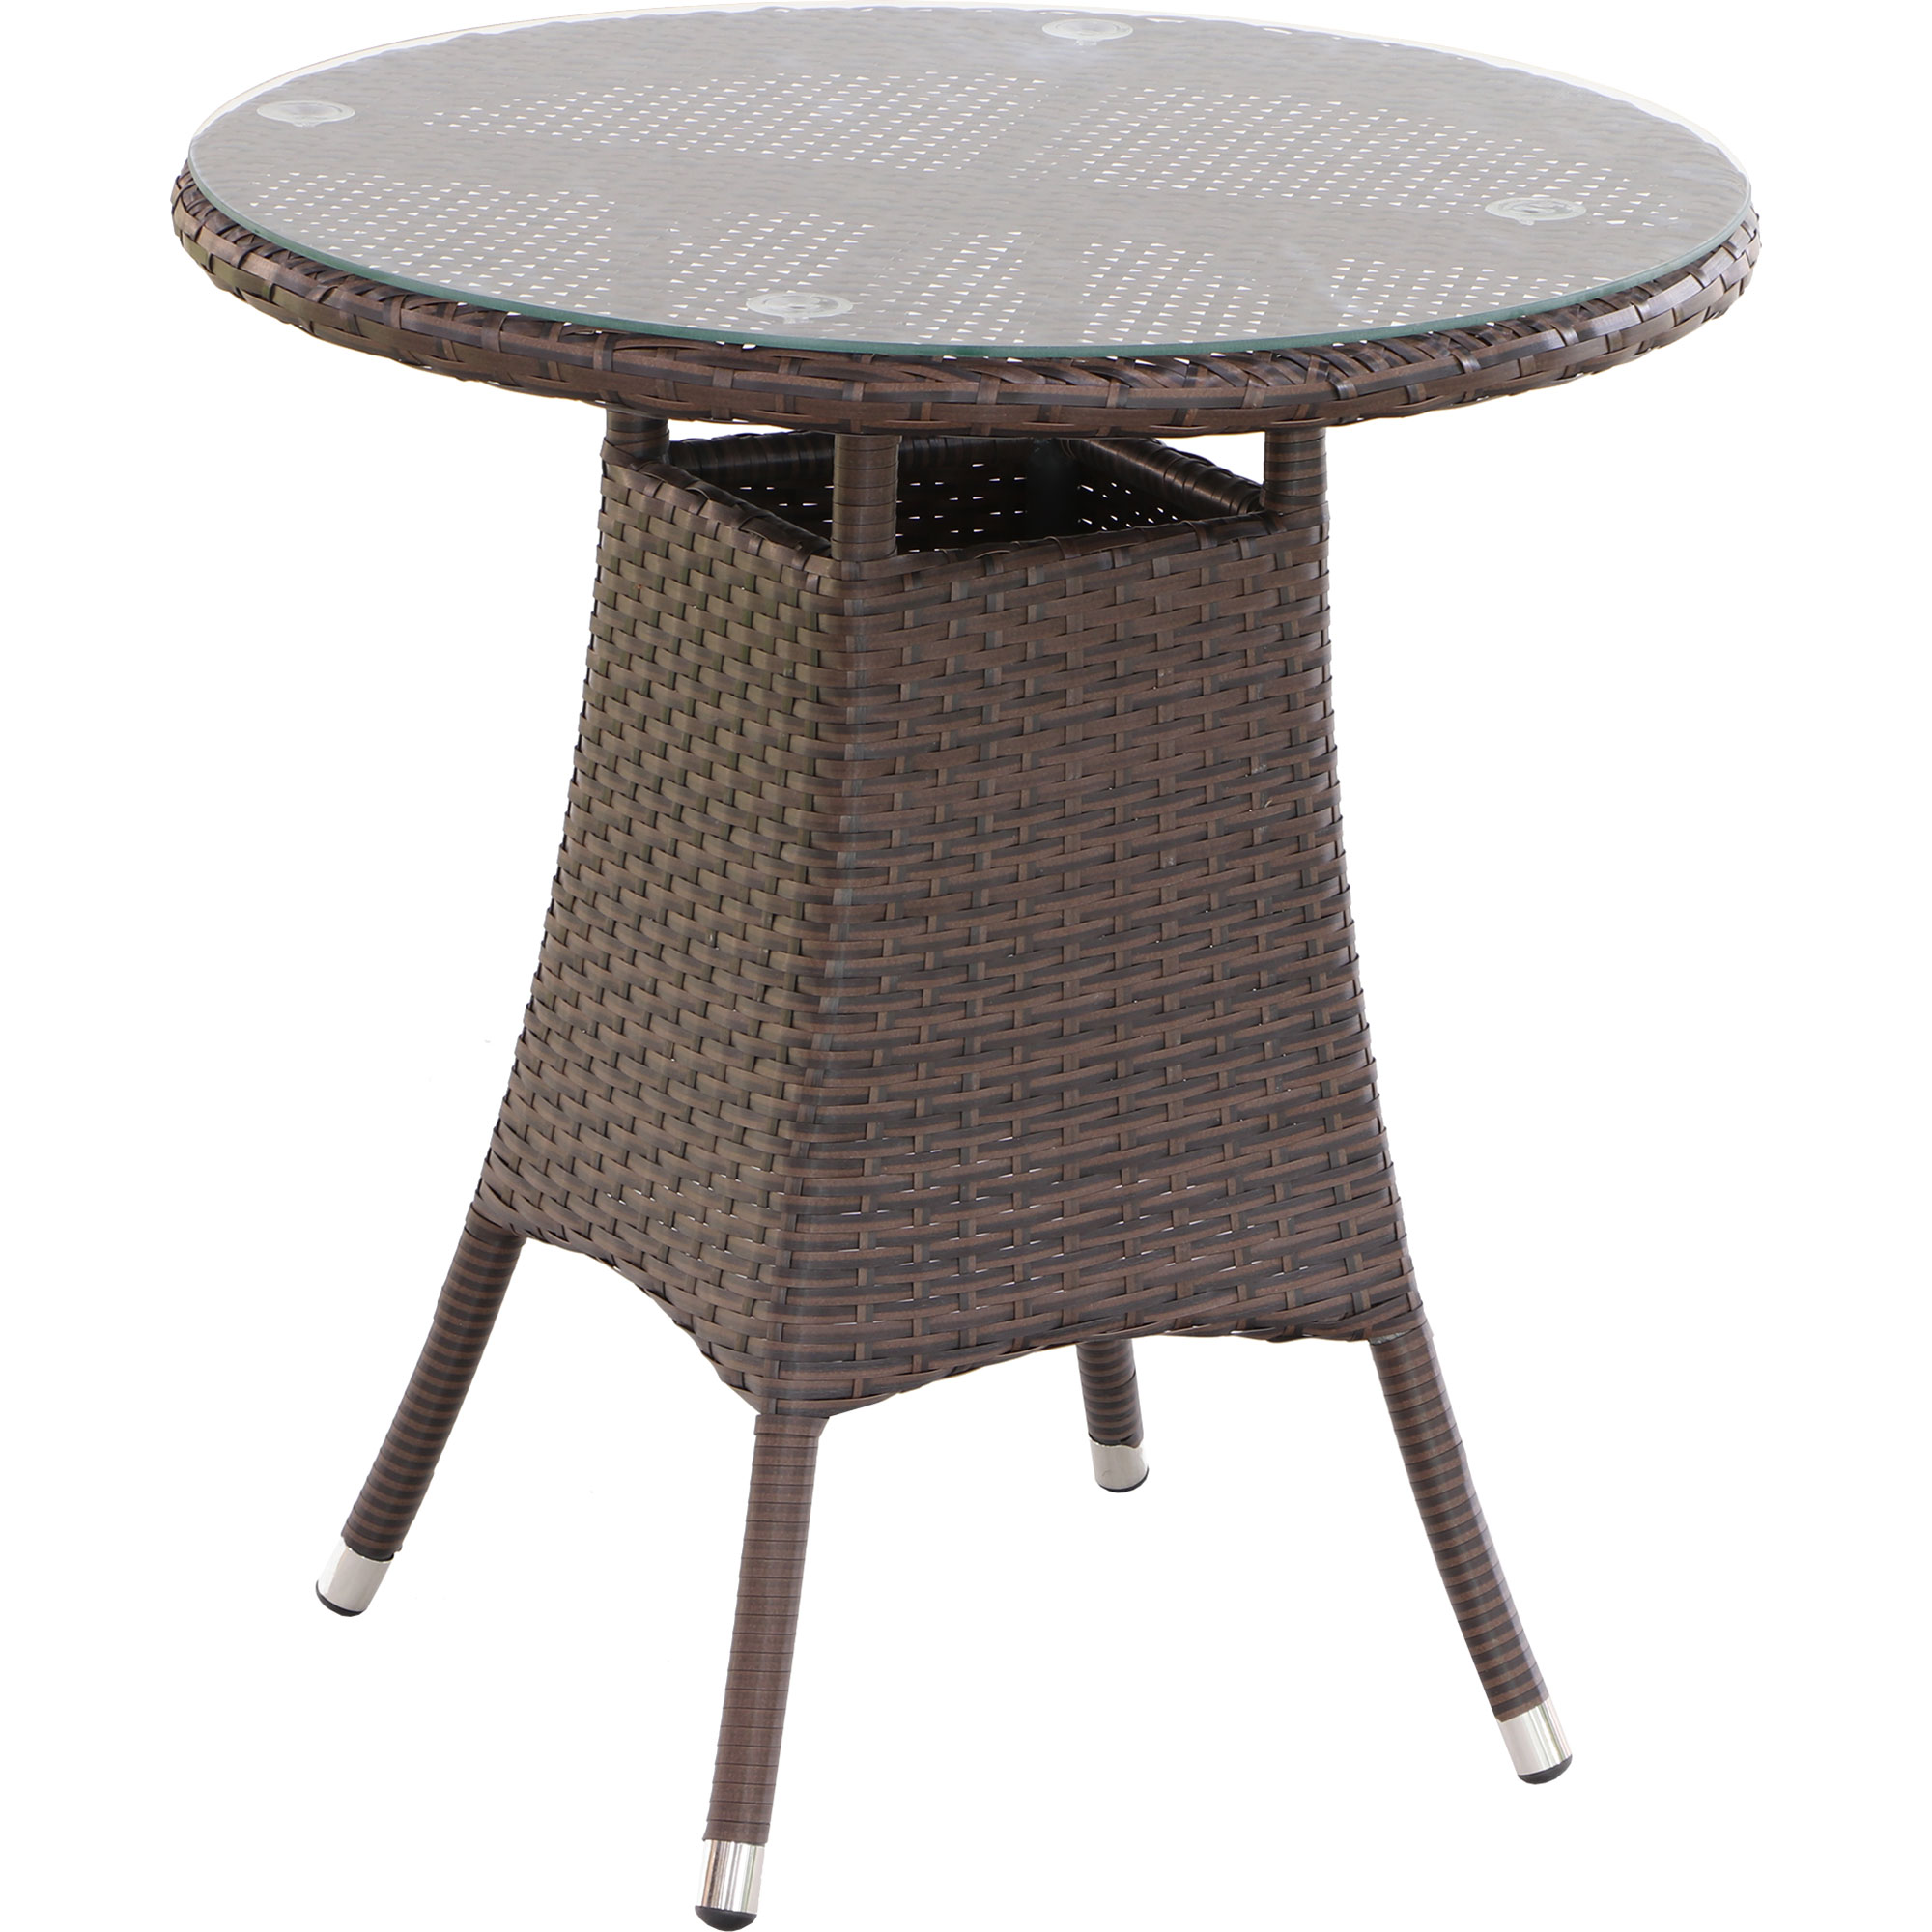 Комплект мебели Yuhang 3 предмета, цвет коричневый, размер д70х75см - фото 5